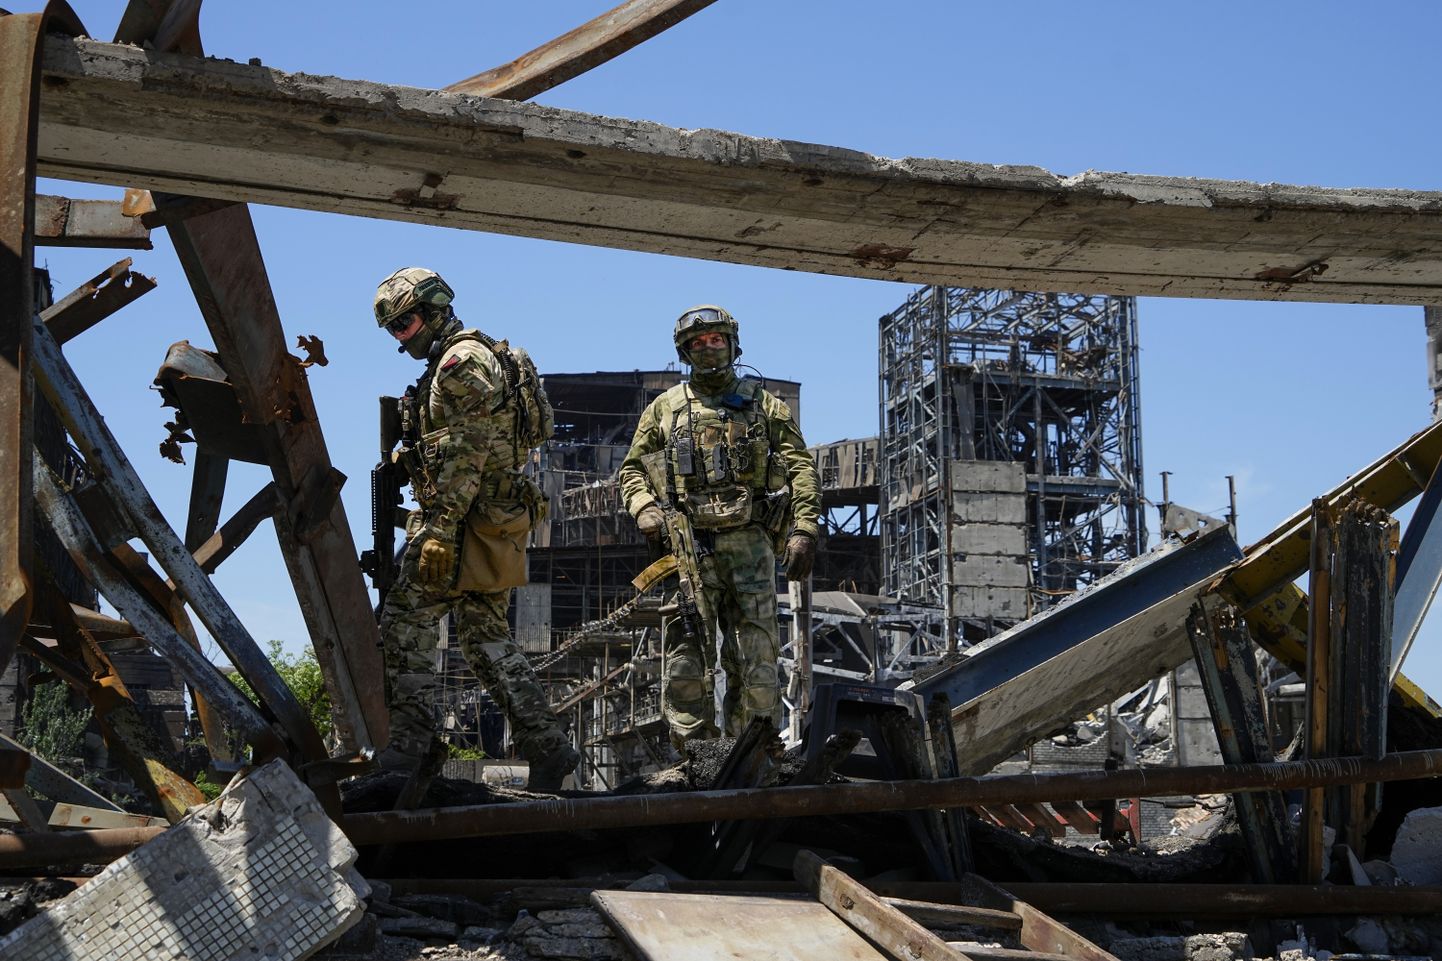 Vene sõdurid patrullimas Ukrainas vallutatud sadamalinna Mariupoli Azovstali terasetehase territooriumil. Foto on tehtud 19. juunil 2022